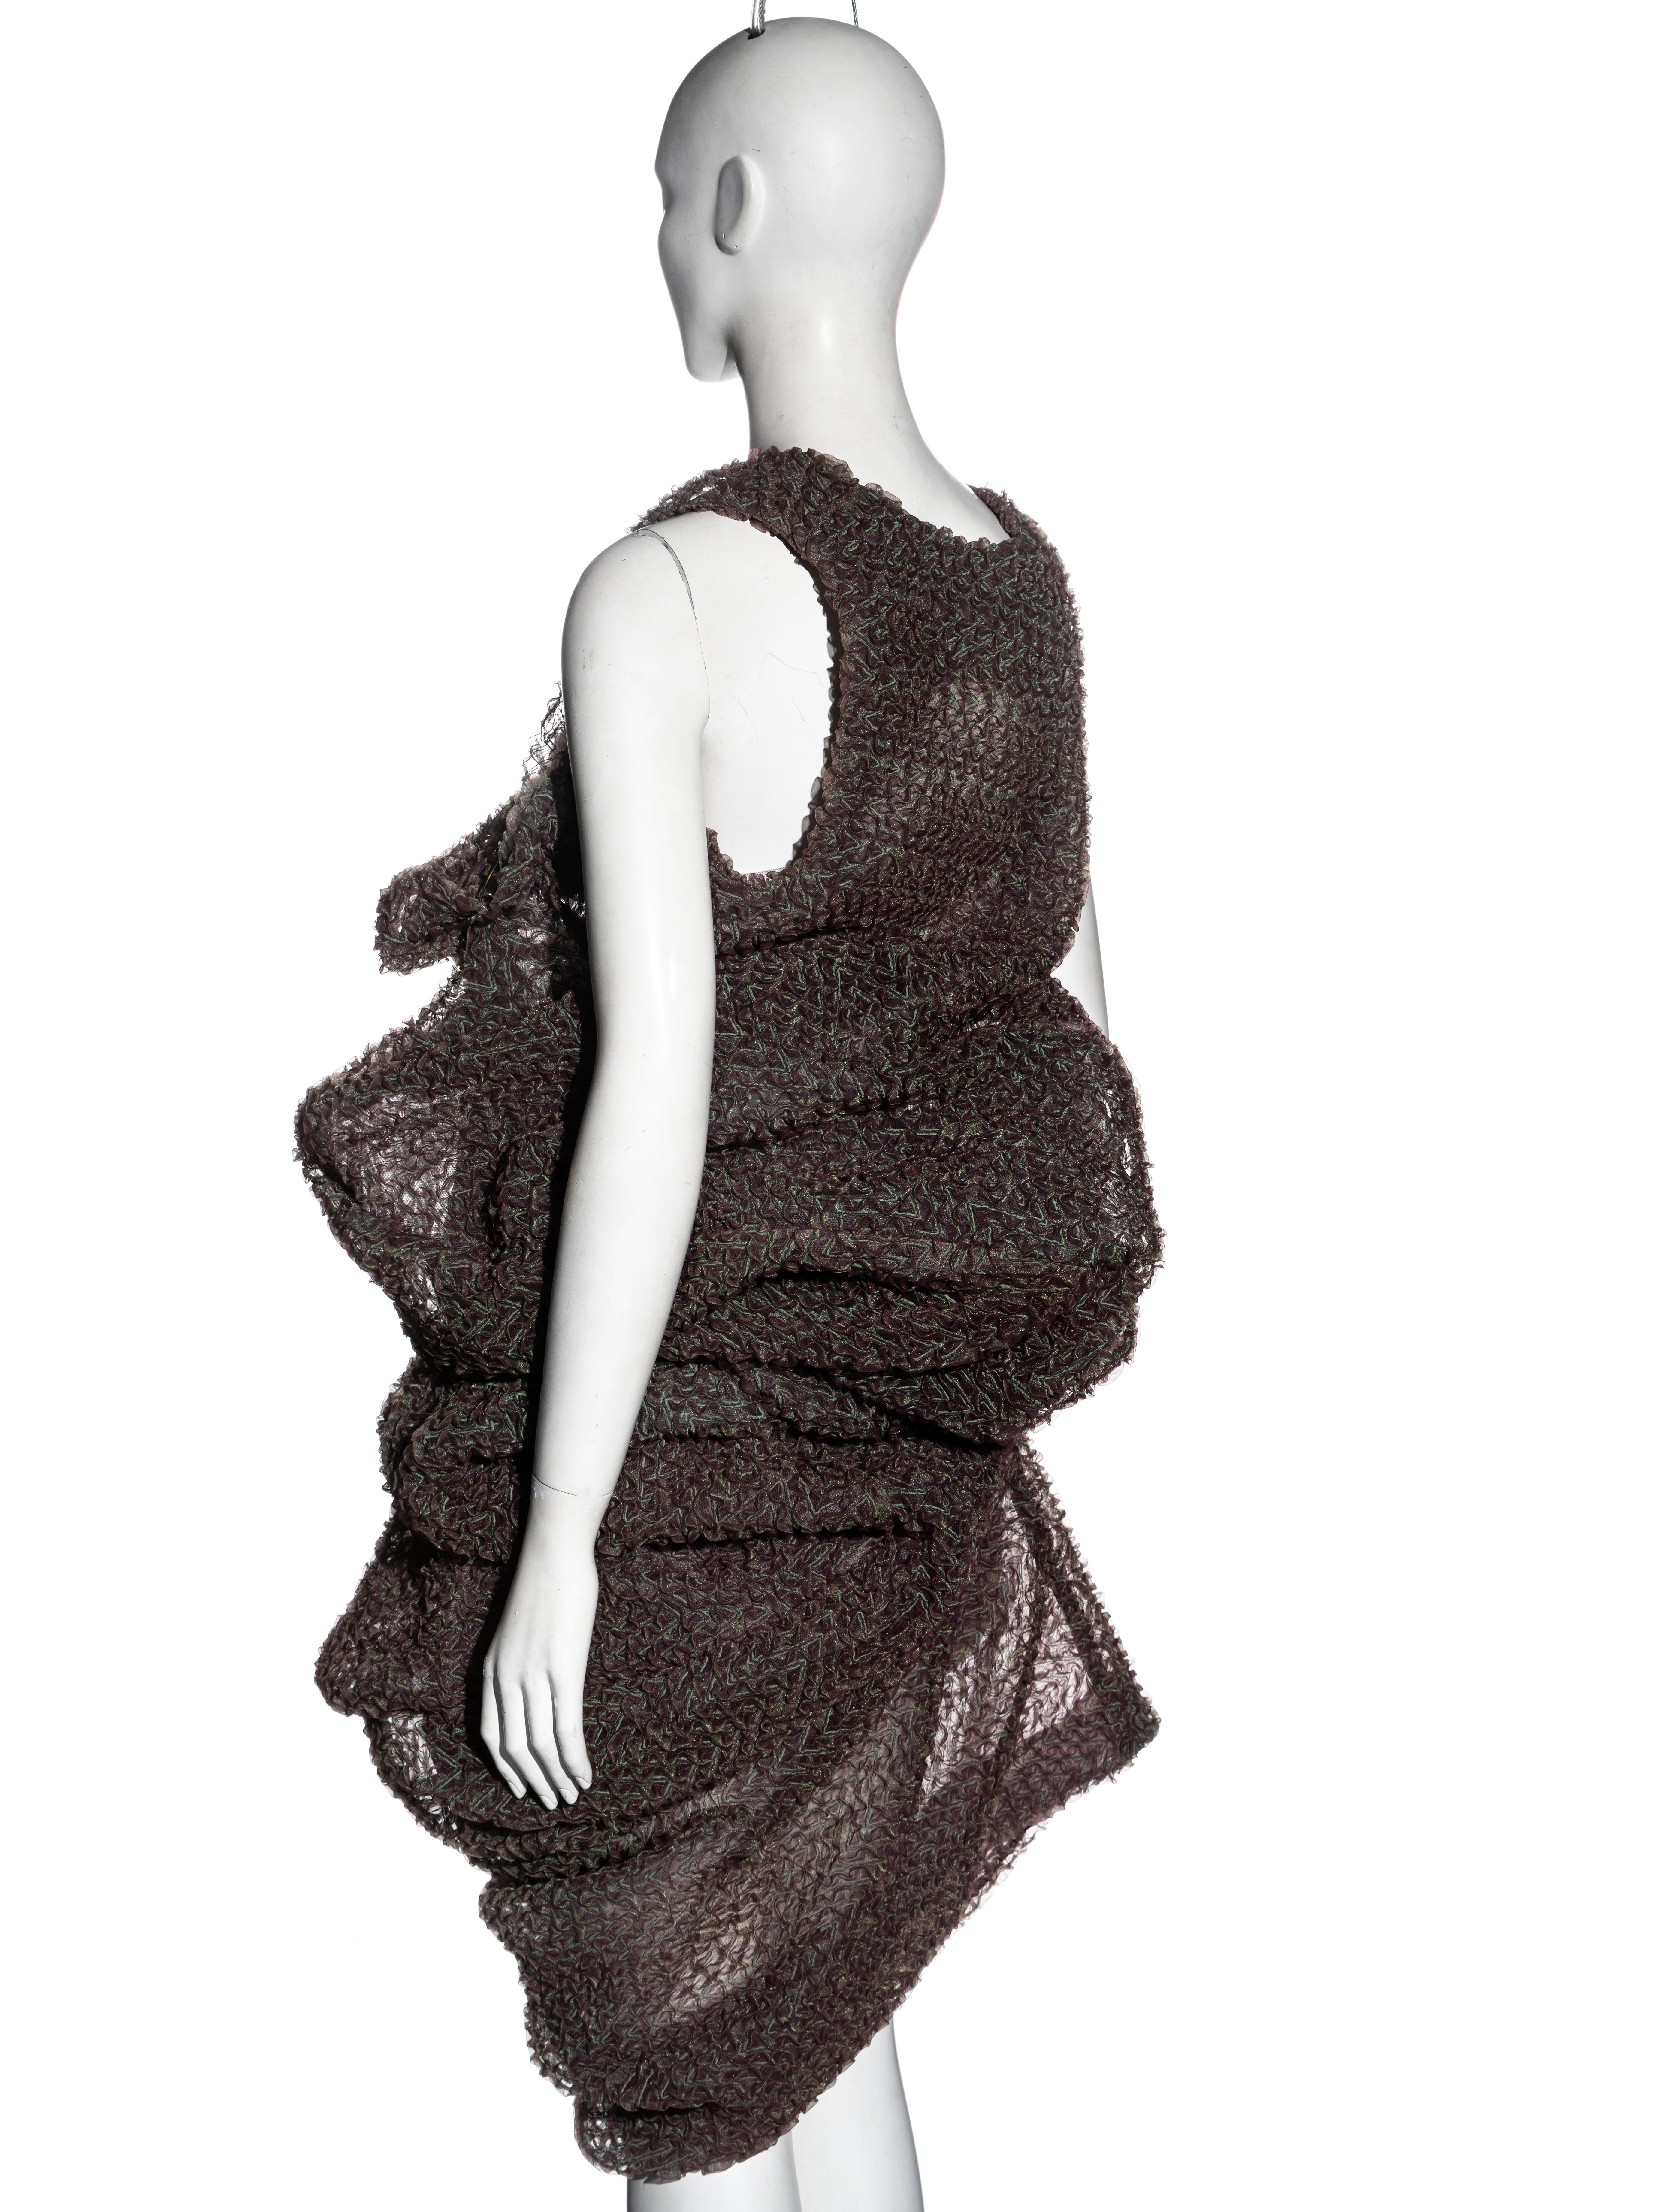 Comme des Garçons 'Body Meets Dress, Dress Meets Body' dress, ss 1997 6